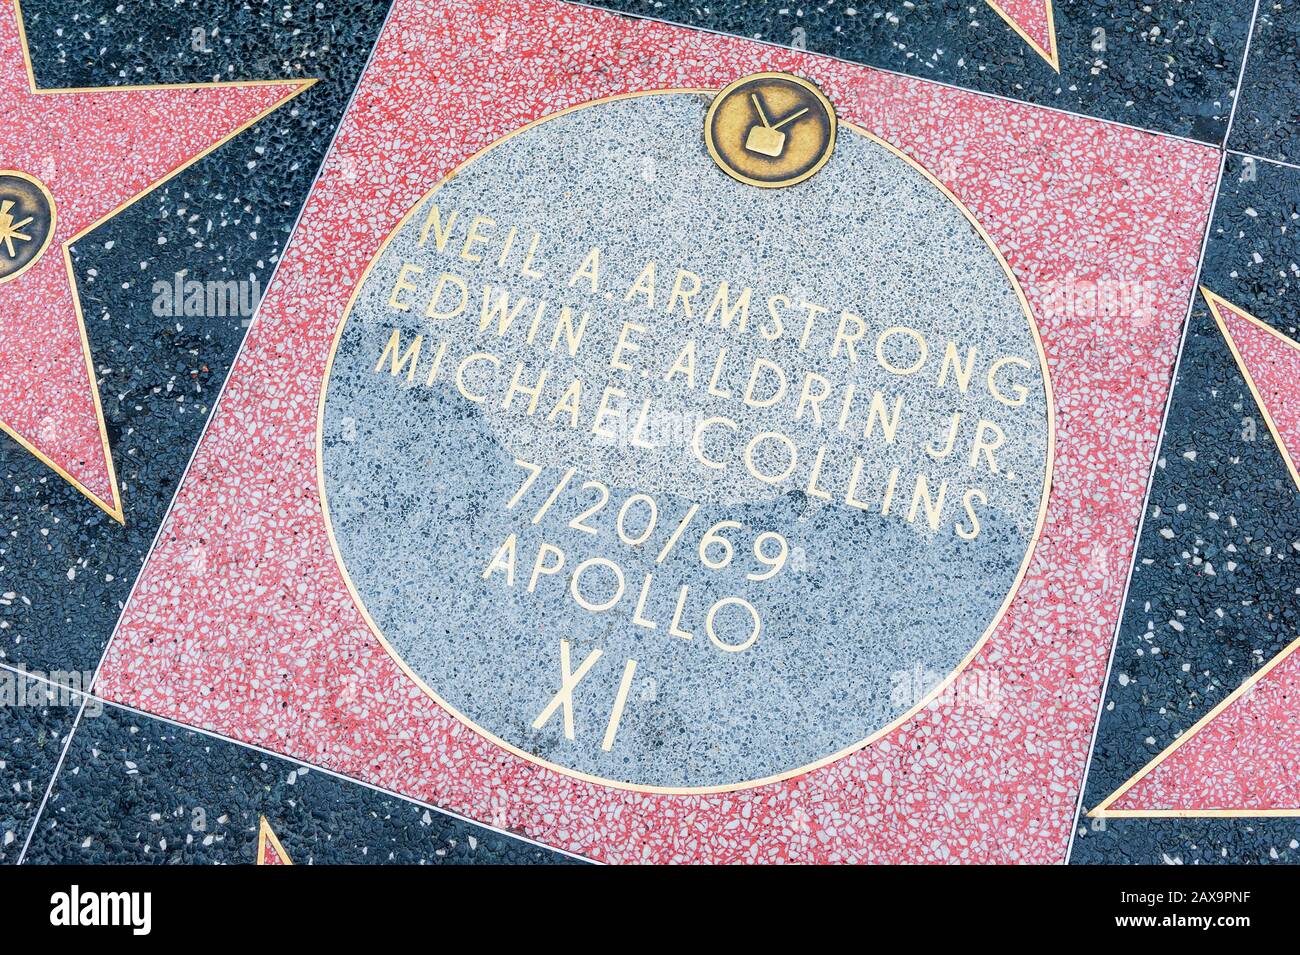 Stella dell'equipaggio di atterraggio dell'Apollo XI Moon del 1969 sulla Hollywood Walk of Fame a Hollywood, Los Angeles, California, Stati Uniti. Foto Stock